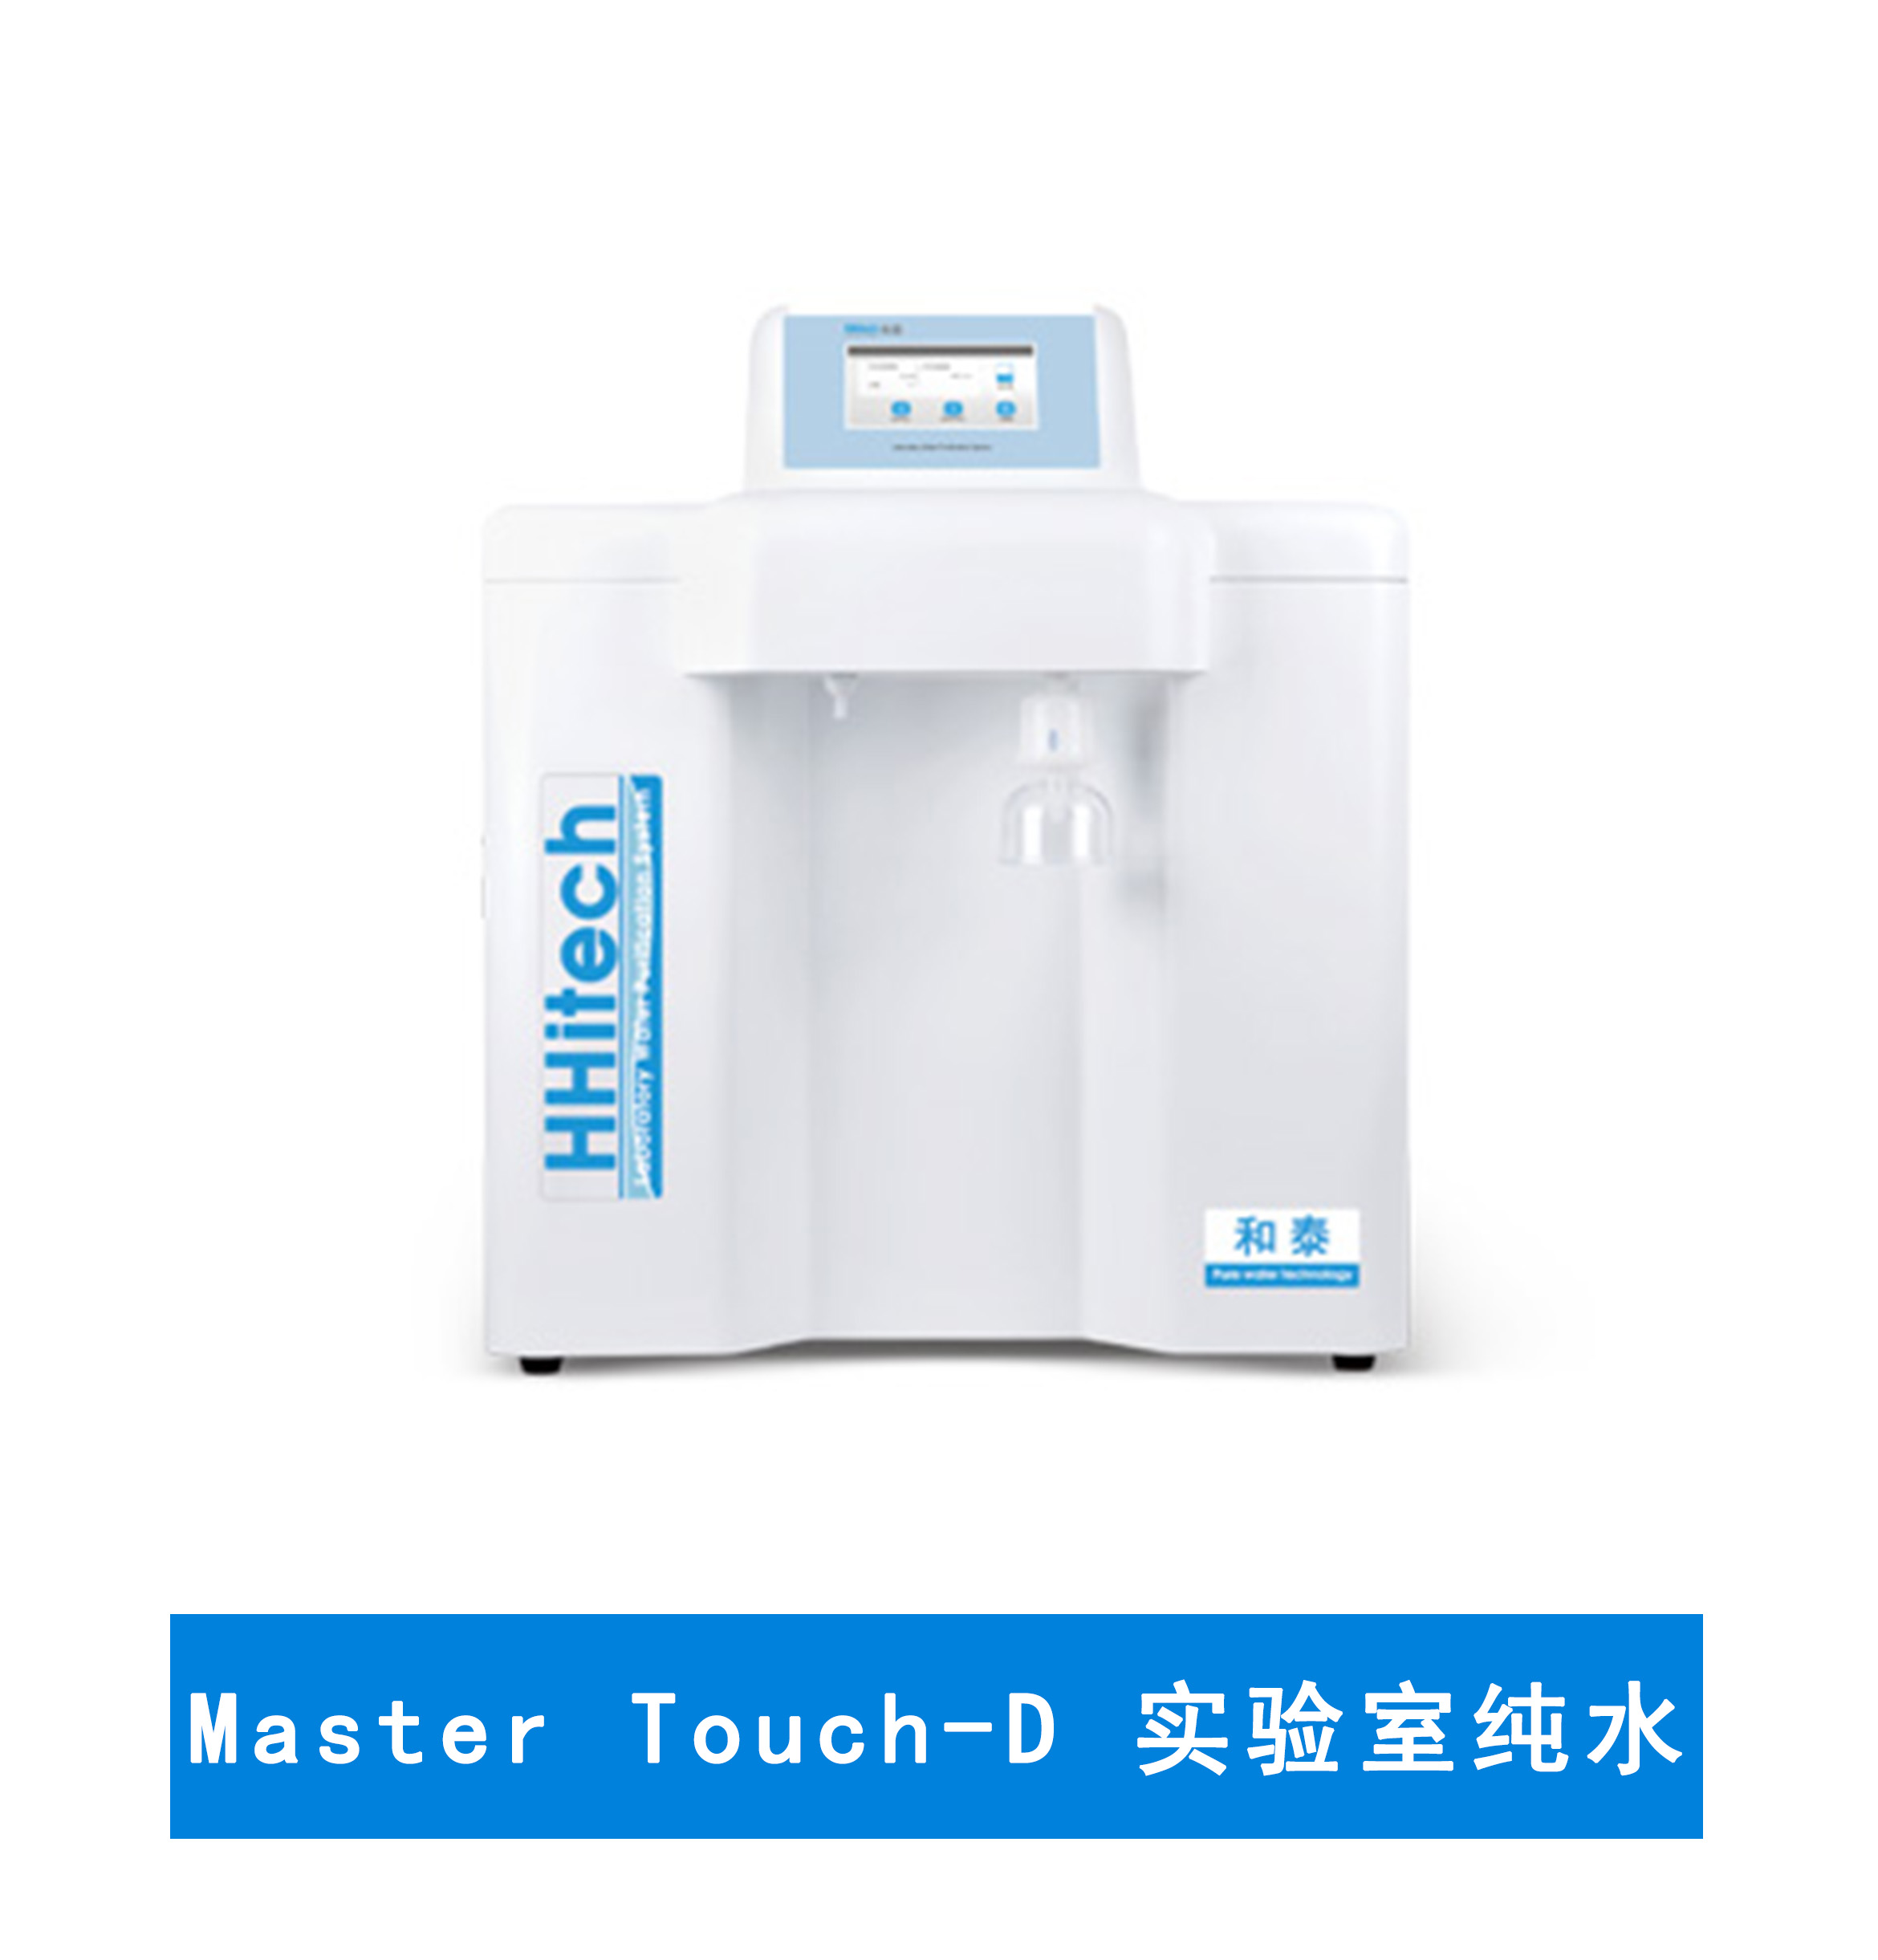 上海和泰 Master Touch-D超纯水机